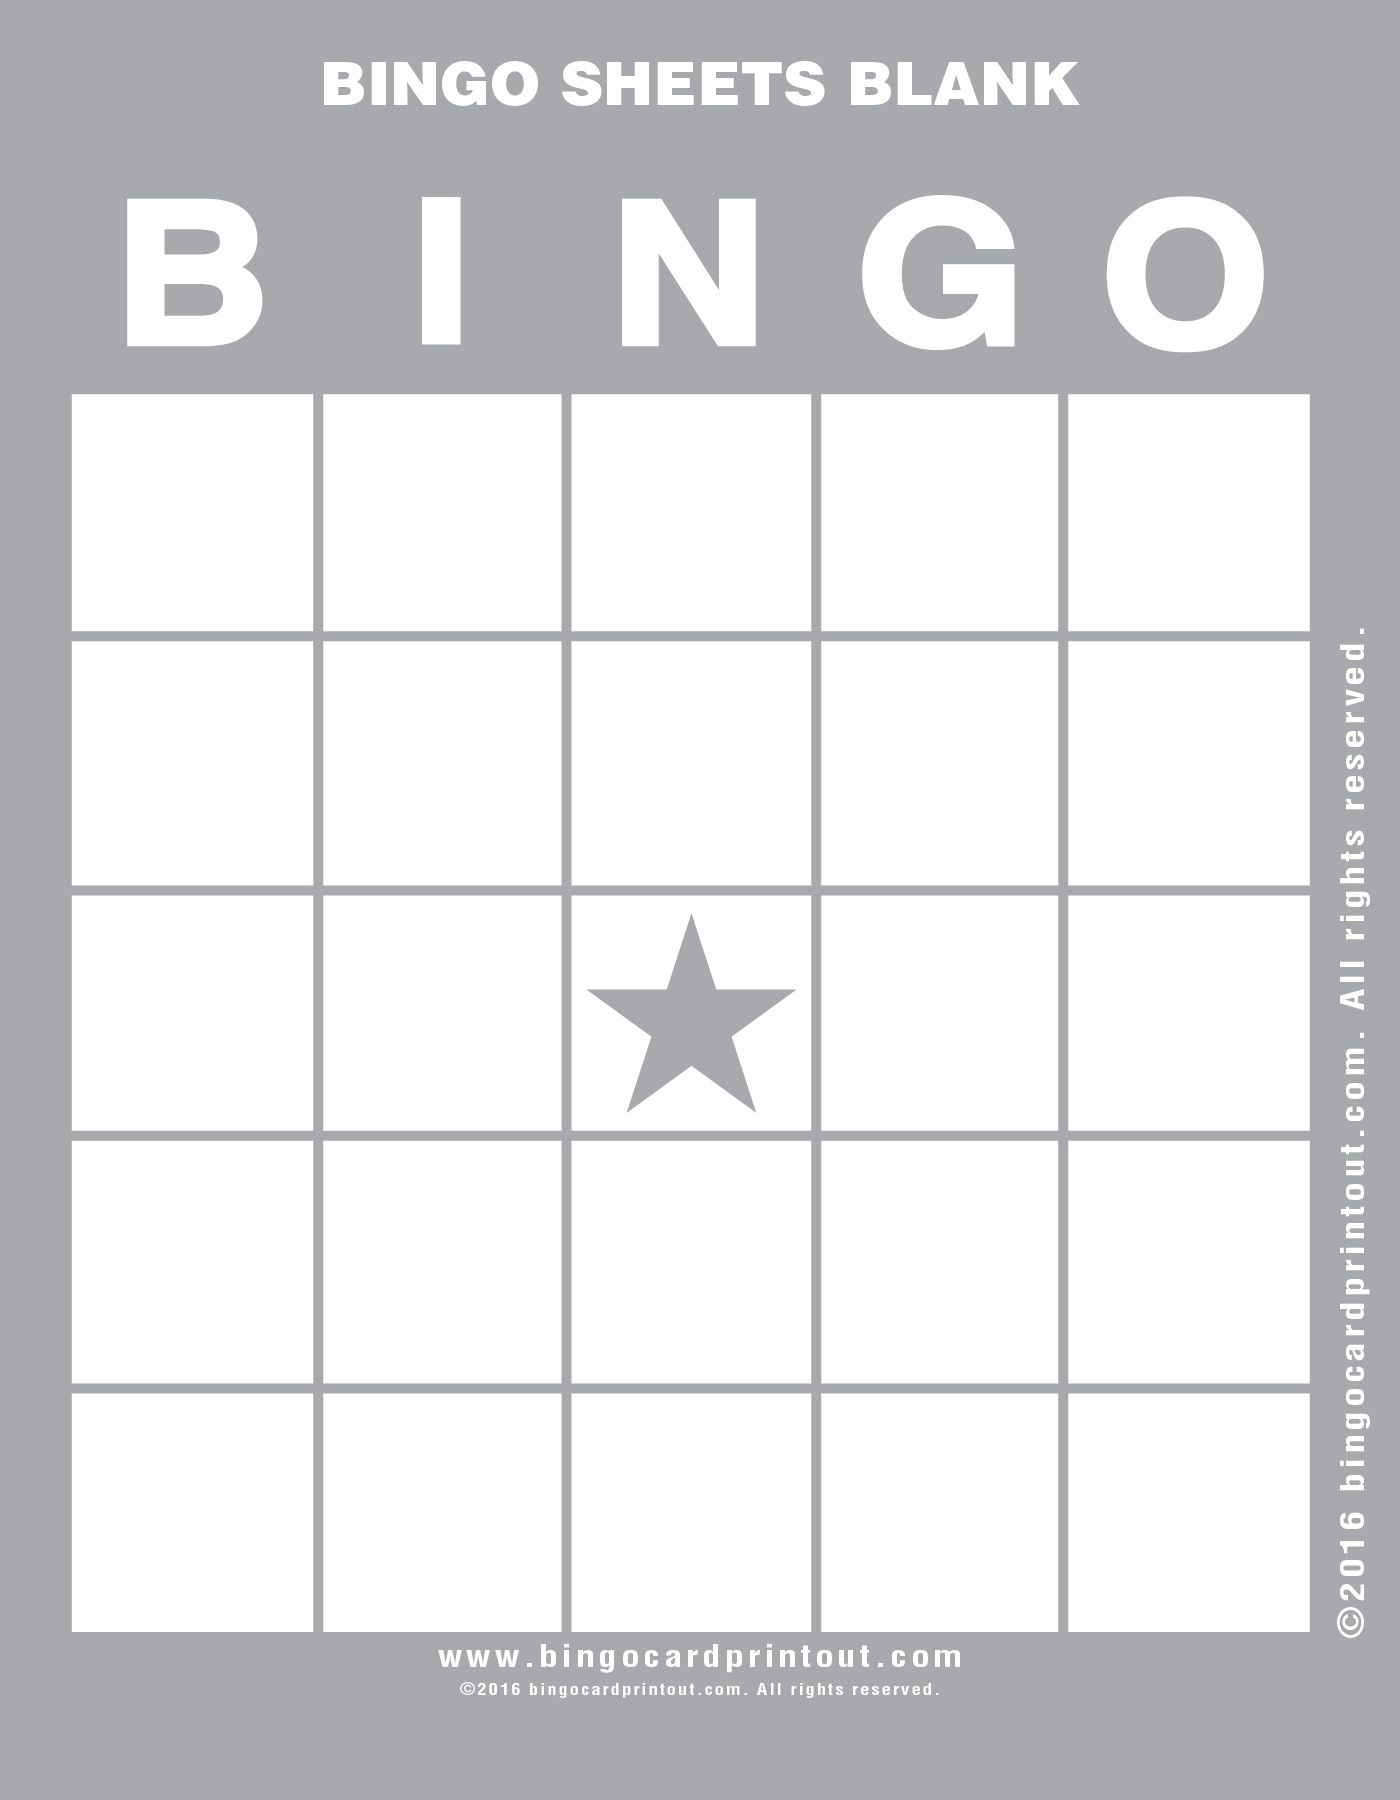 Bingo Sheets Blank | Bingo Sheets, Blank Bingo Cards, Bingo